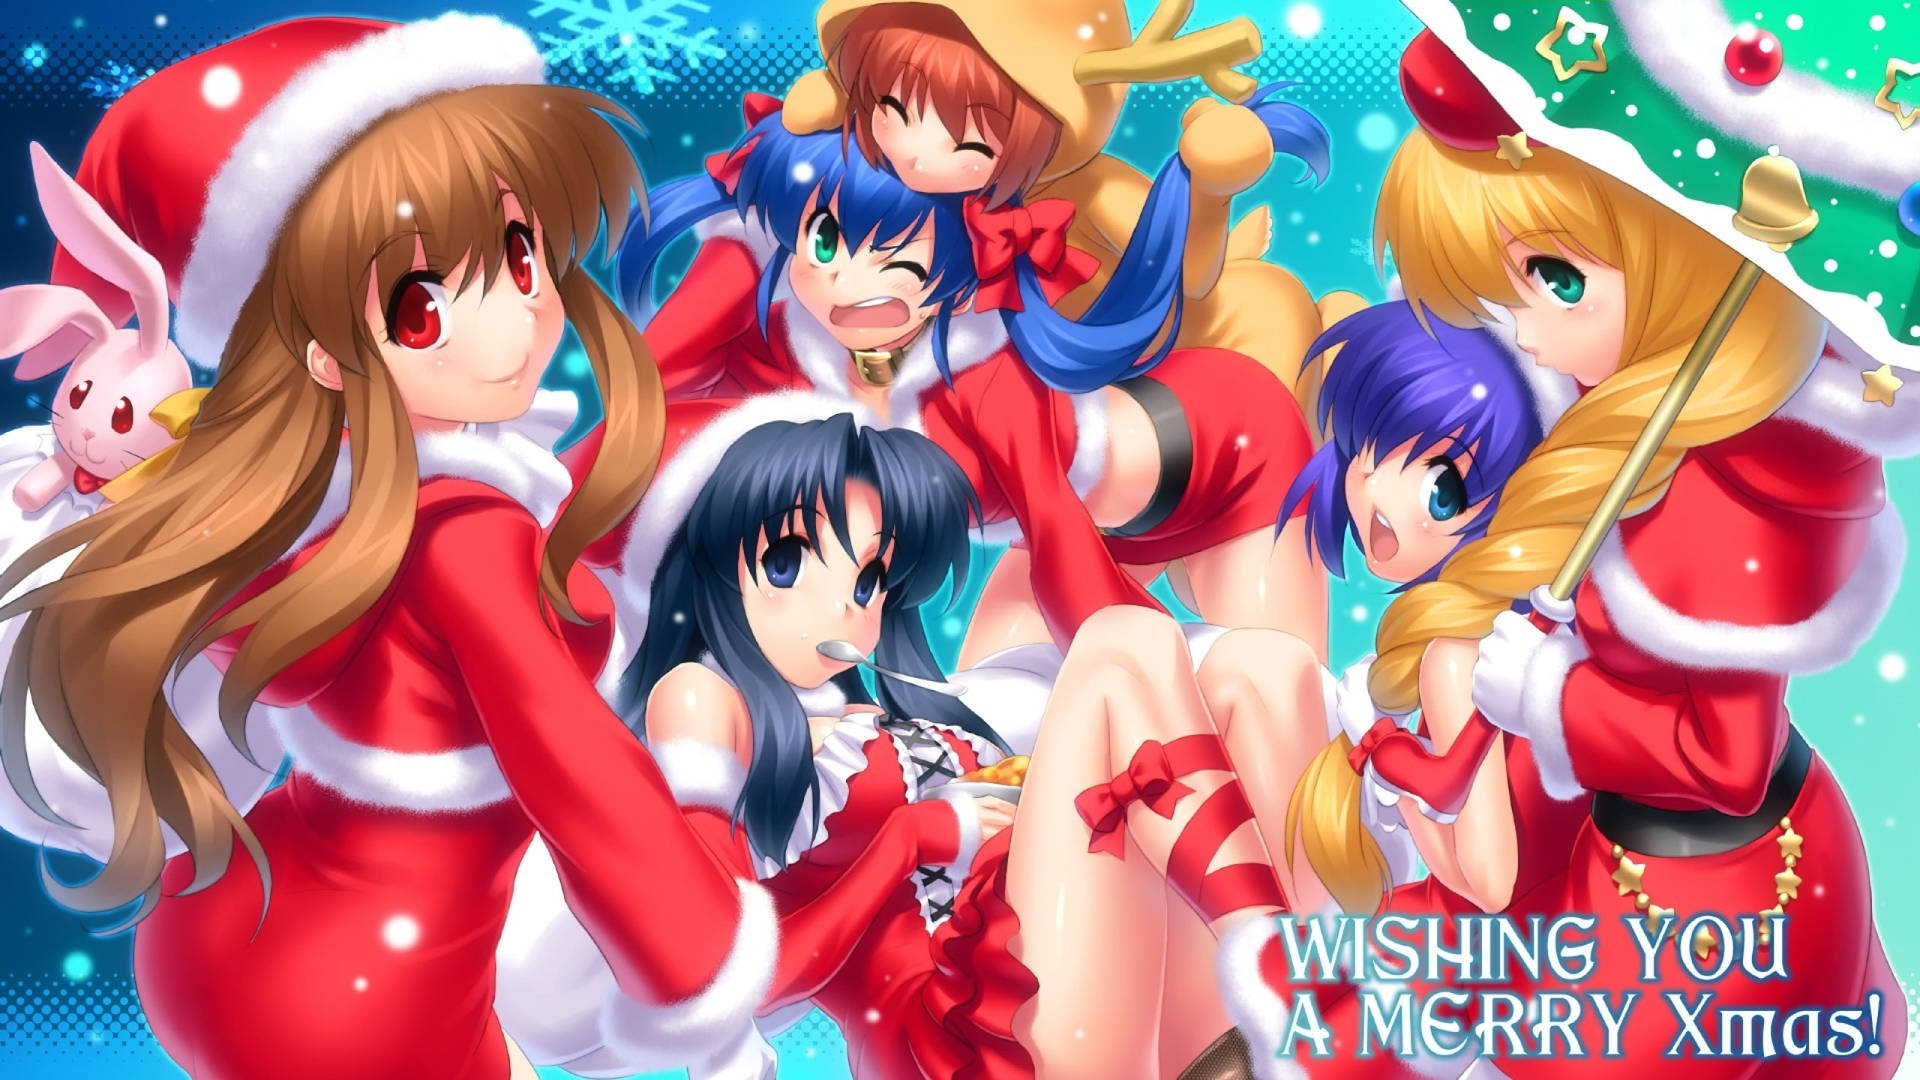 Girl Group Anime Christmas Background